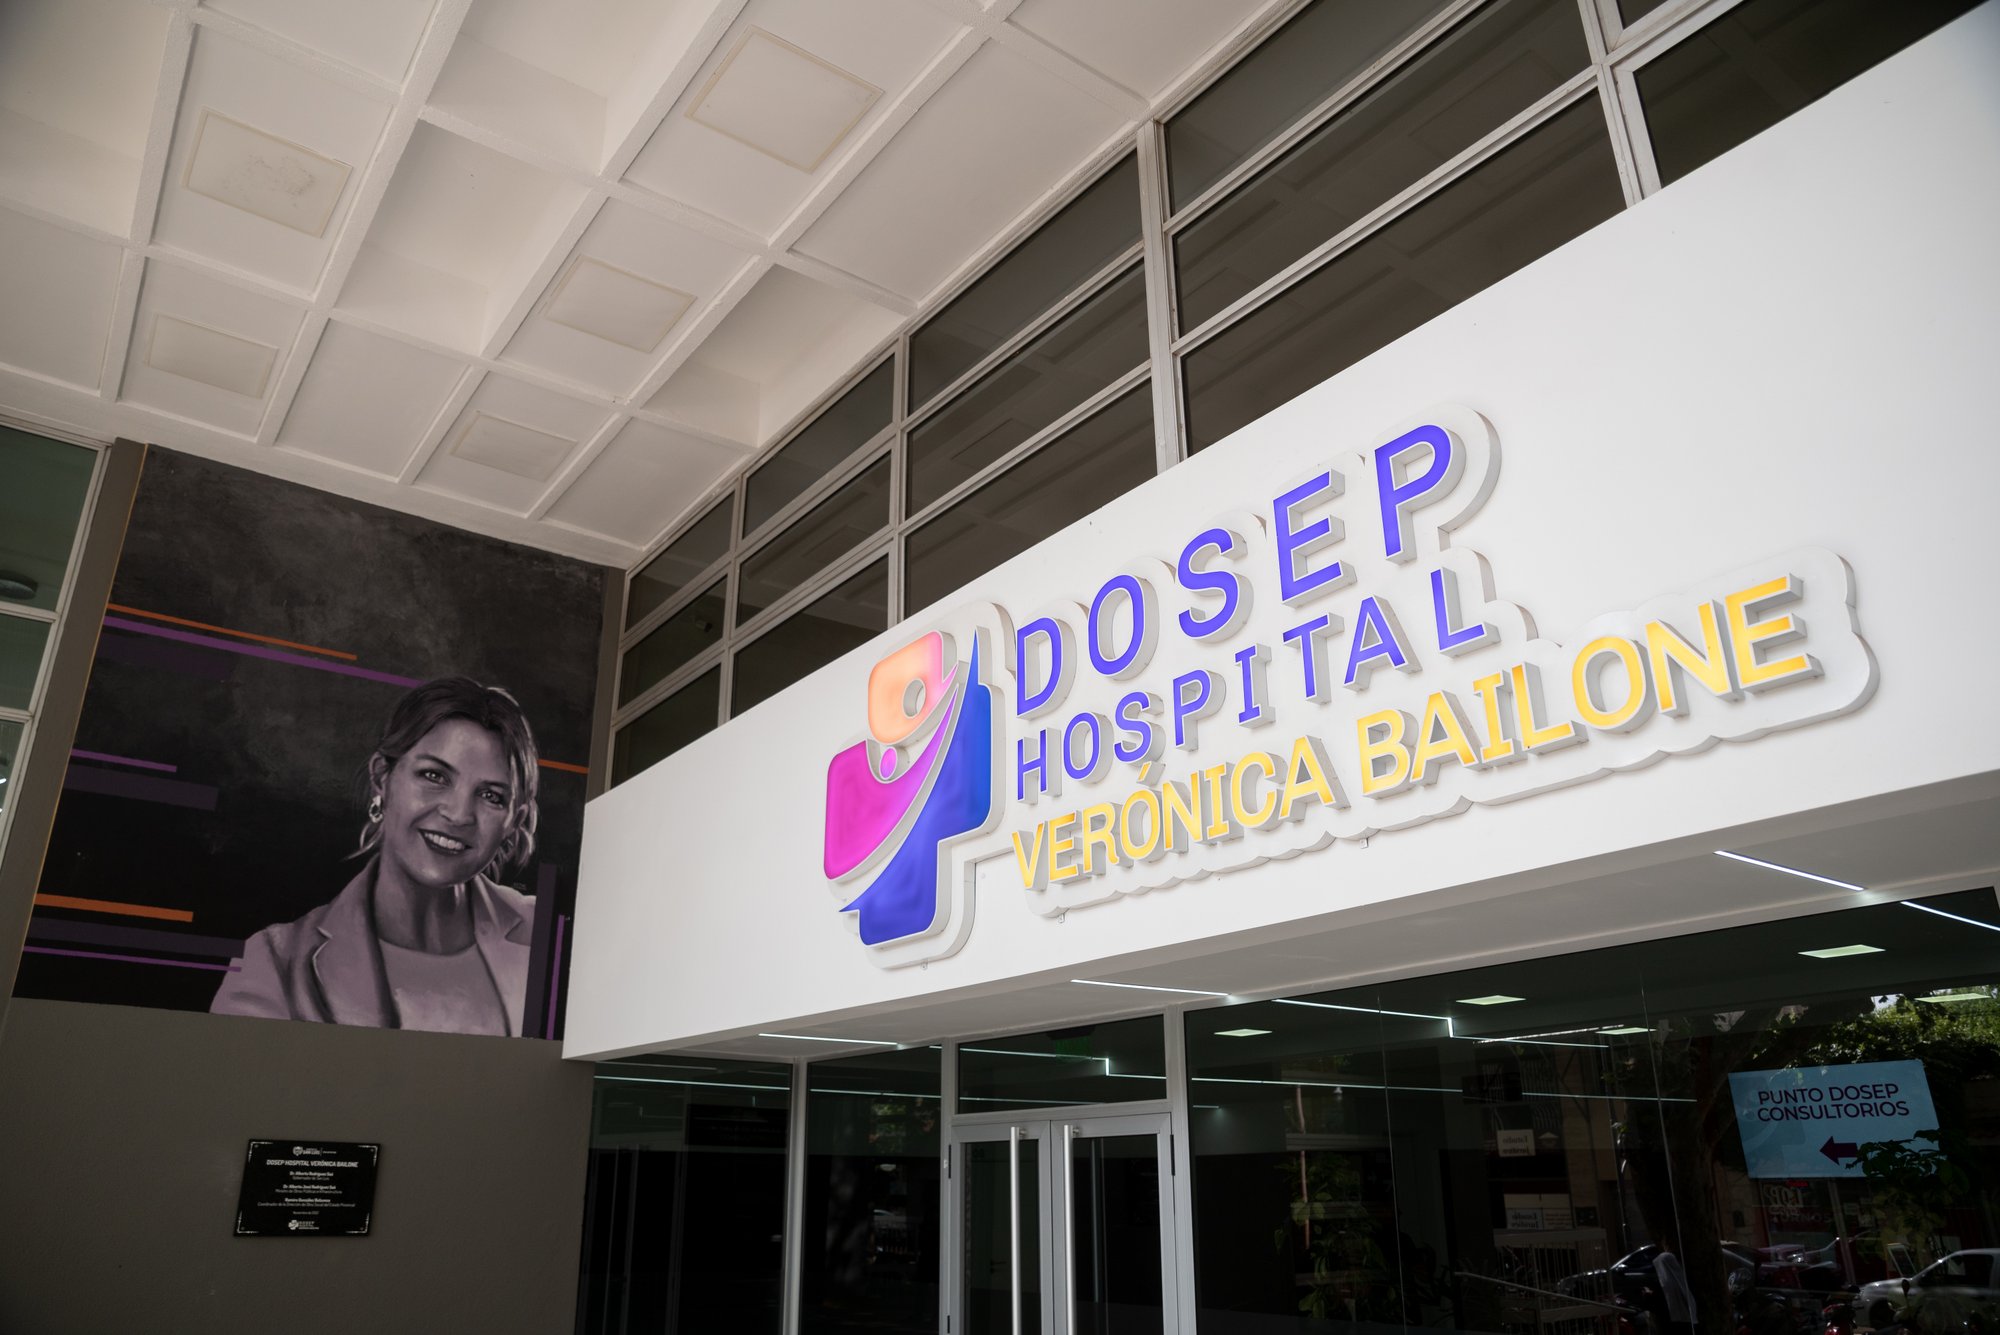 El Dosep Hospital Verónica Bailone habilitó el nuevo servicio de kinesiología y flebología